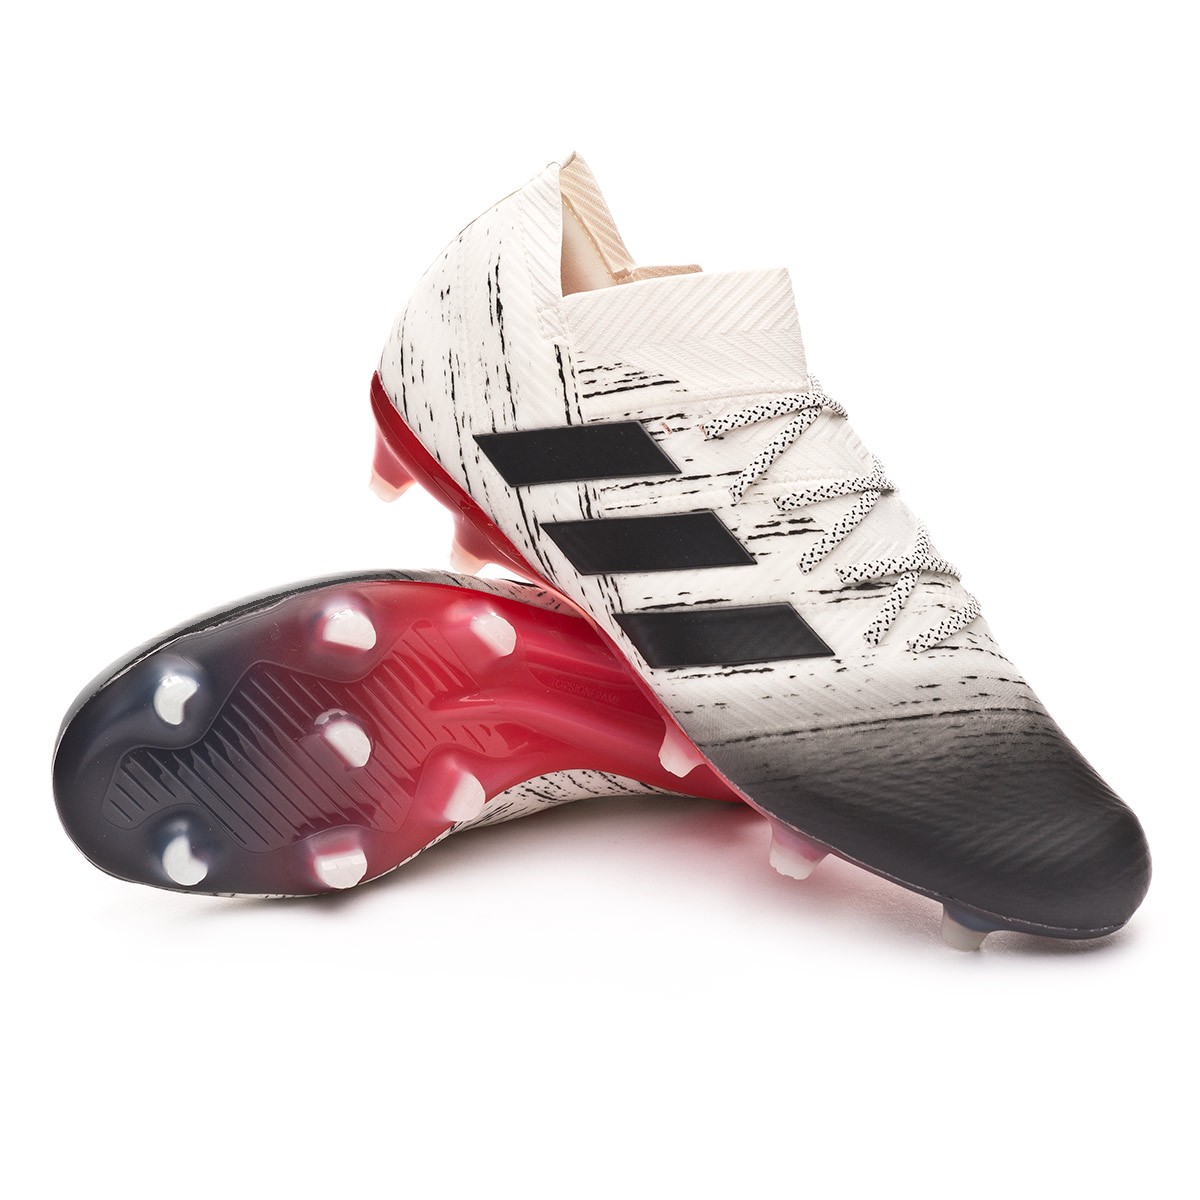 Football Boots adidas Nemeziz 18.1 FG 